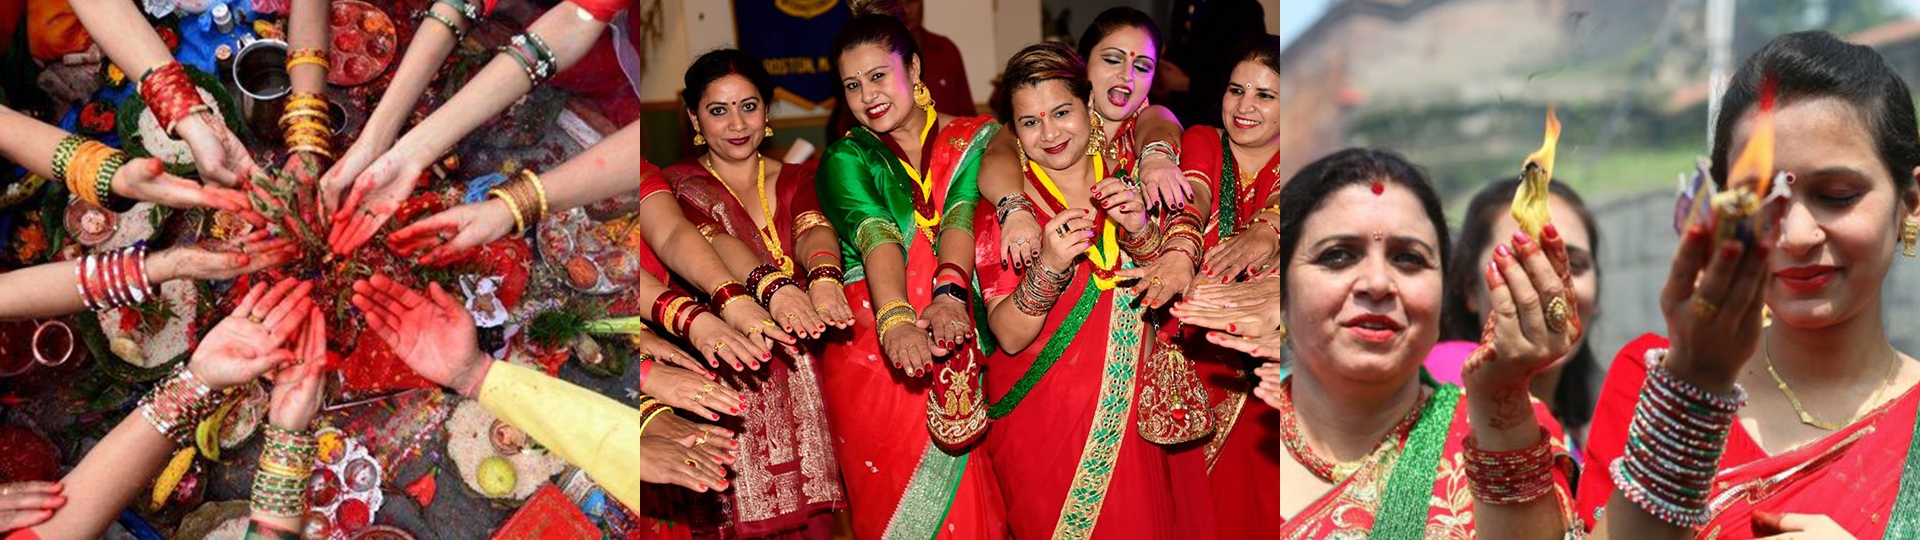 Teej Festival in Nepal, The Popular Women's Festival in Nepal | Footprint  Adventure